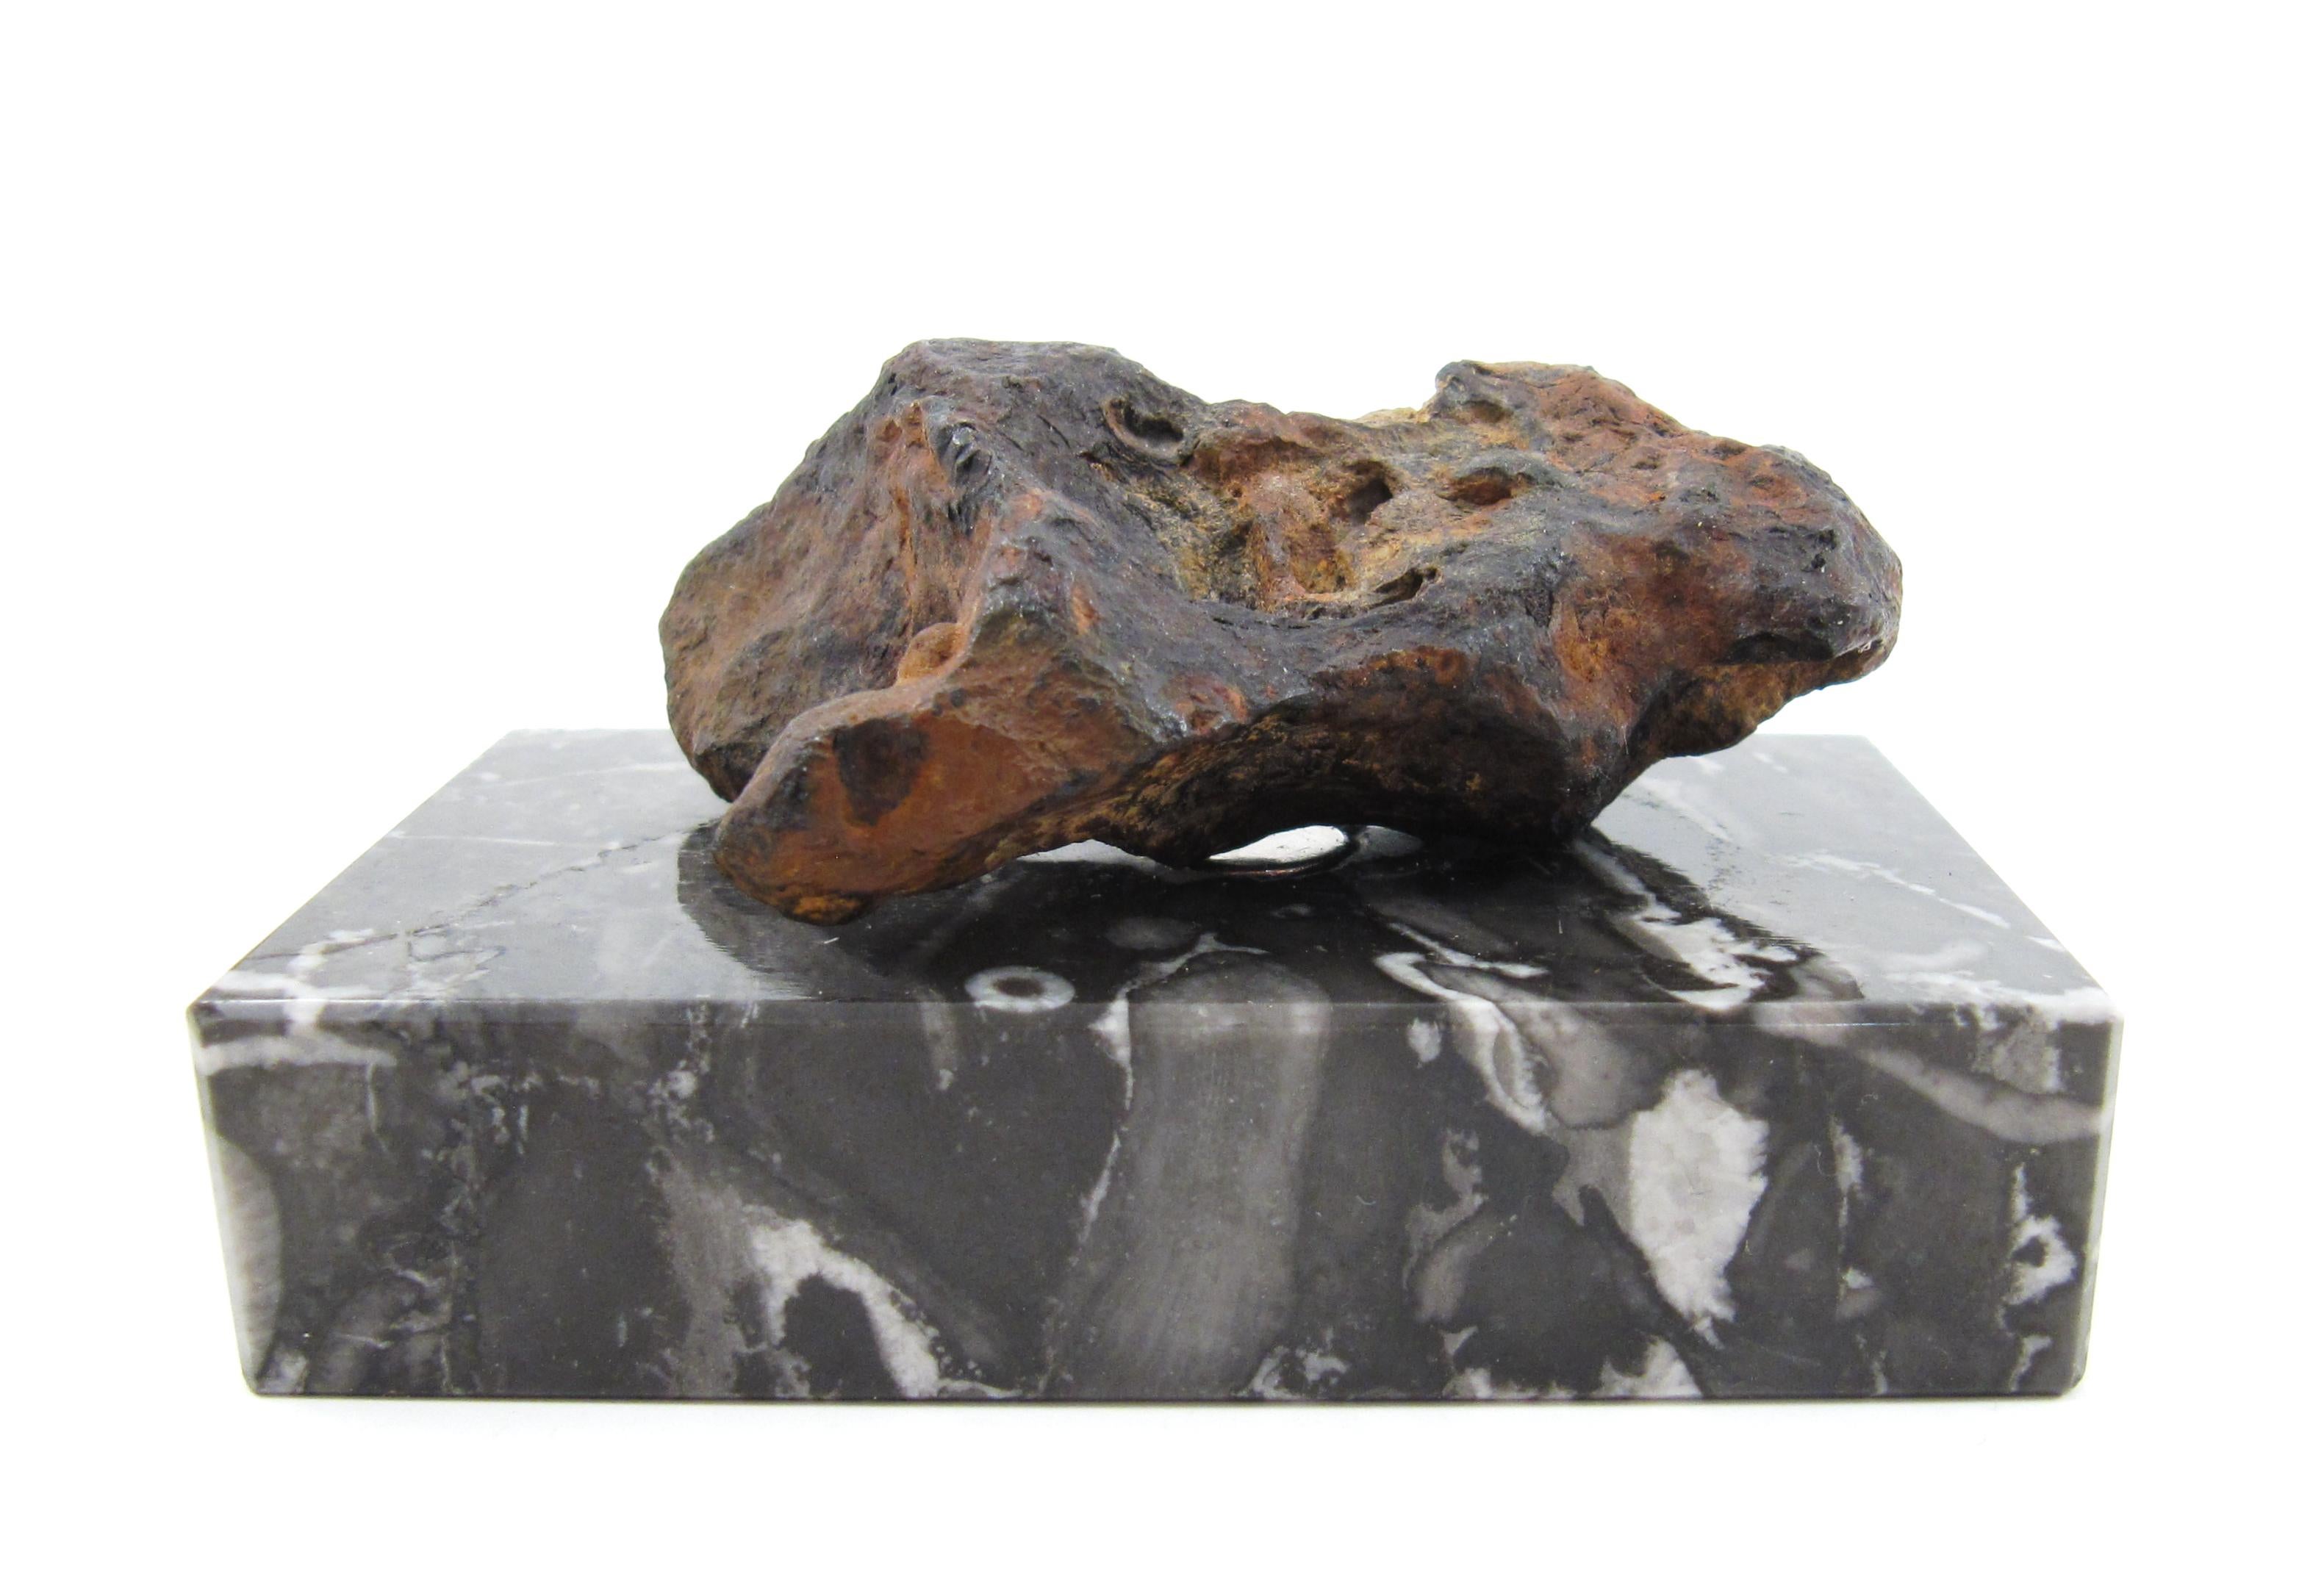 Une sculpture en fer naturelle façonnée par la nature

La météorite sculptée est présentée sur un bloc de marbre flammé noir et blanc poli et maintenue en place par un aimant puissant. Le spécimen peut être retiré ou positionné au gré du